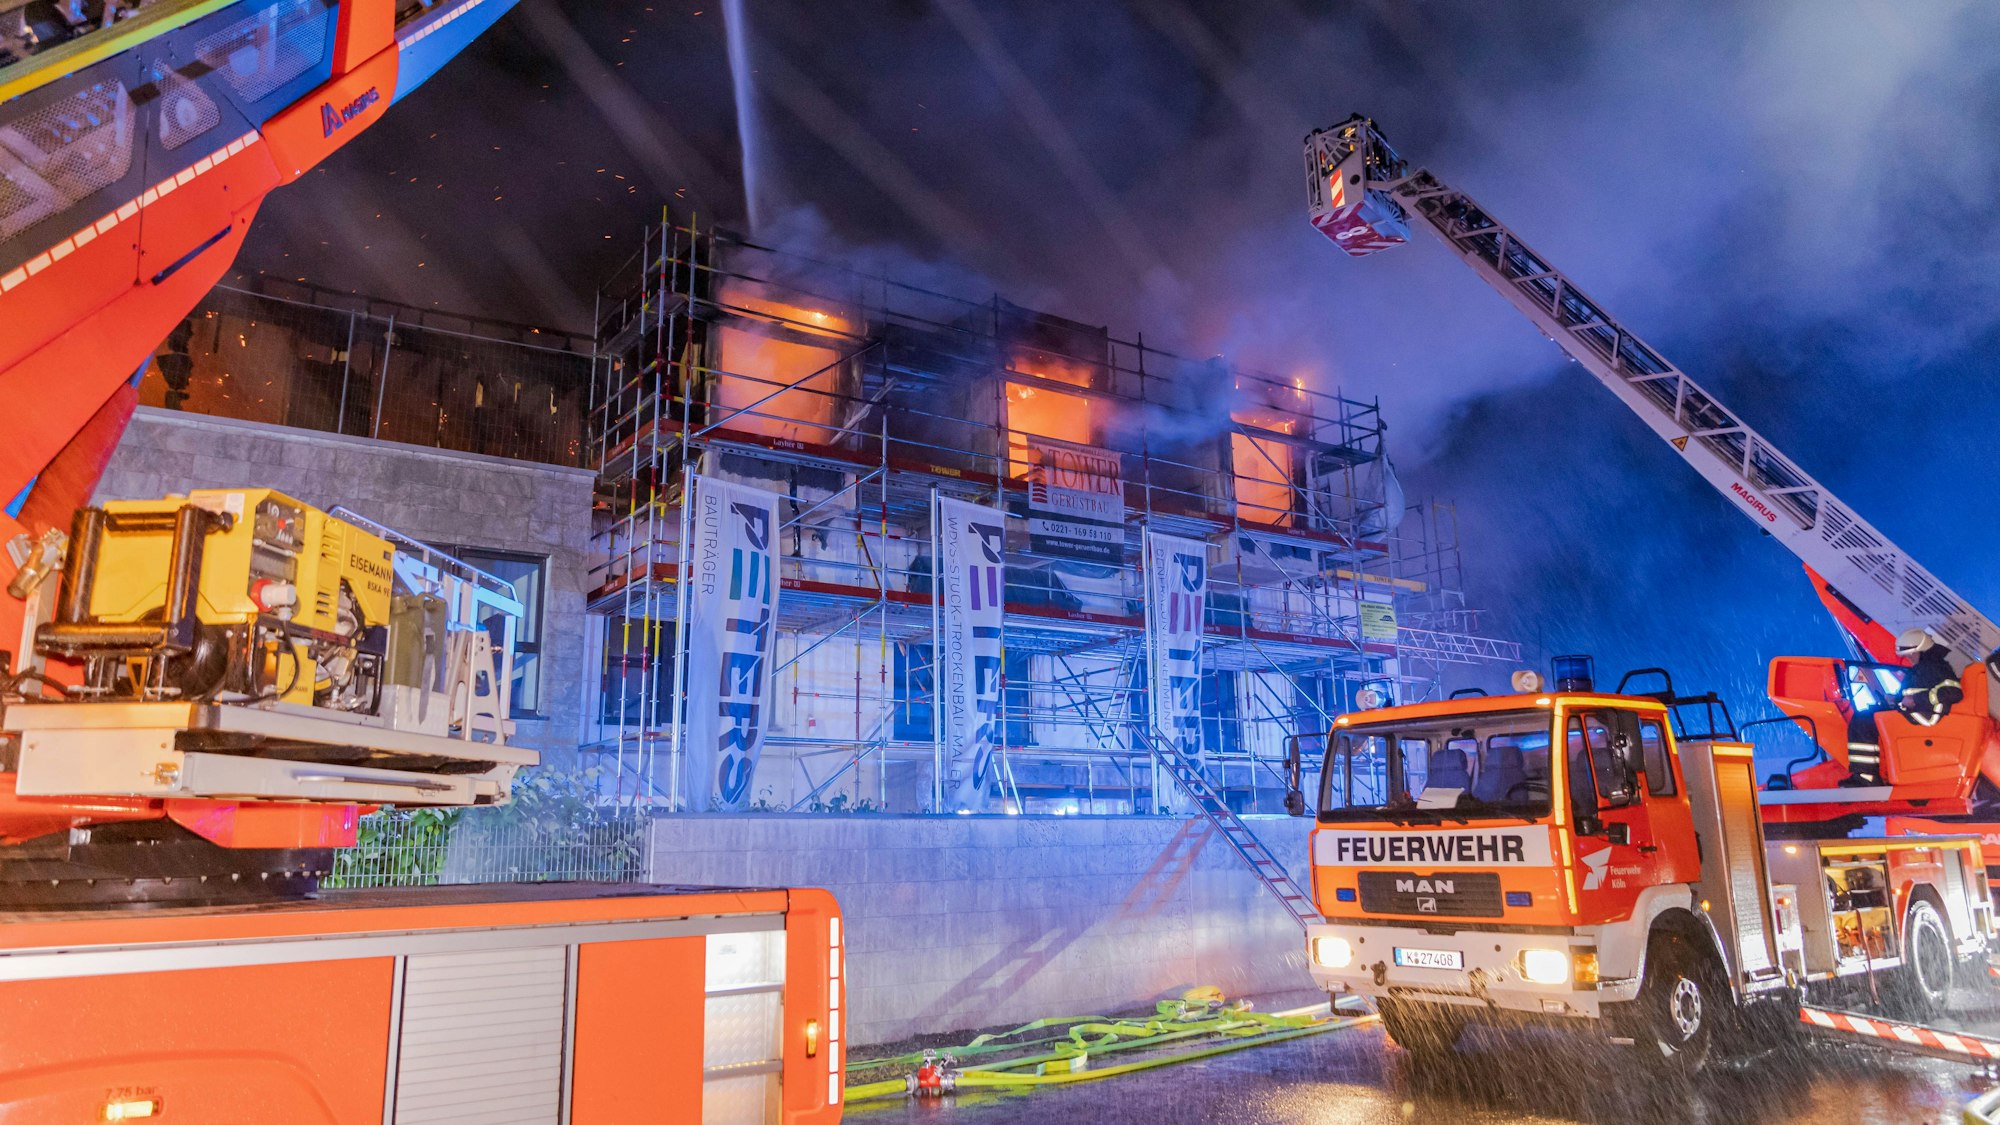 In der Nacht auf Dienstag ist ein Feuer in einem Rohbau in einem Industriegebiet in Köln-Porz ausgebrochen. Die Feuerwehr warnte die Bevölkerung vor Brandgeruch. Verletzte gab es nicht.